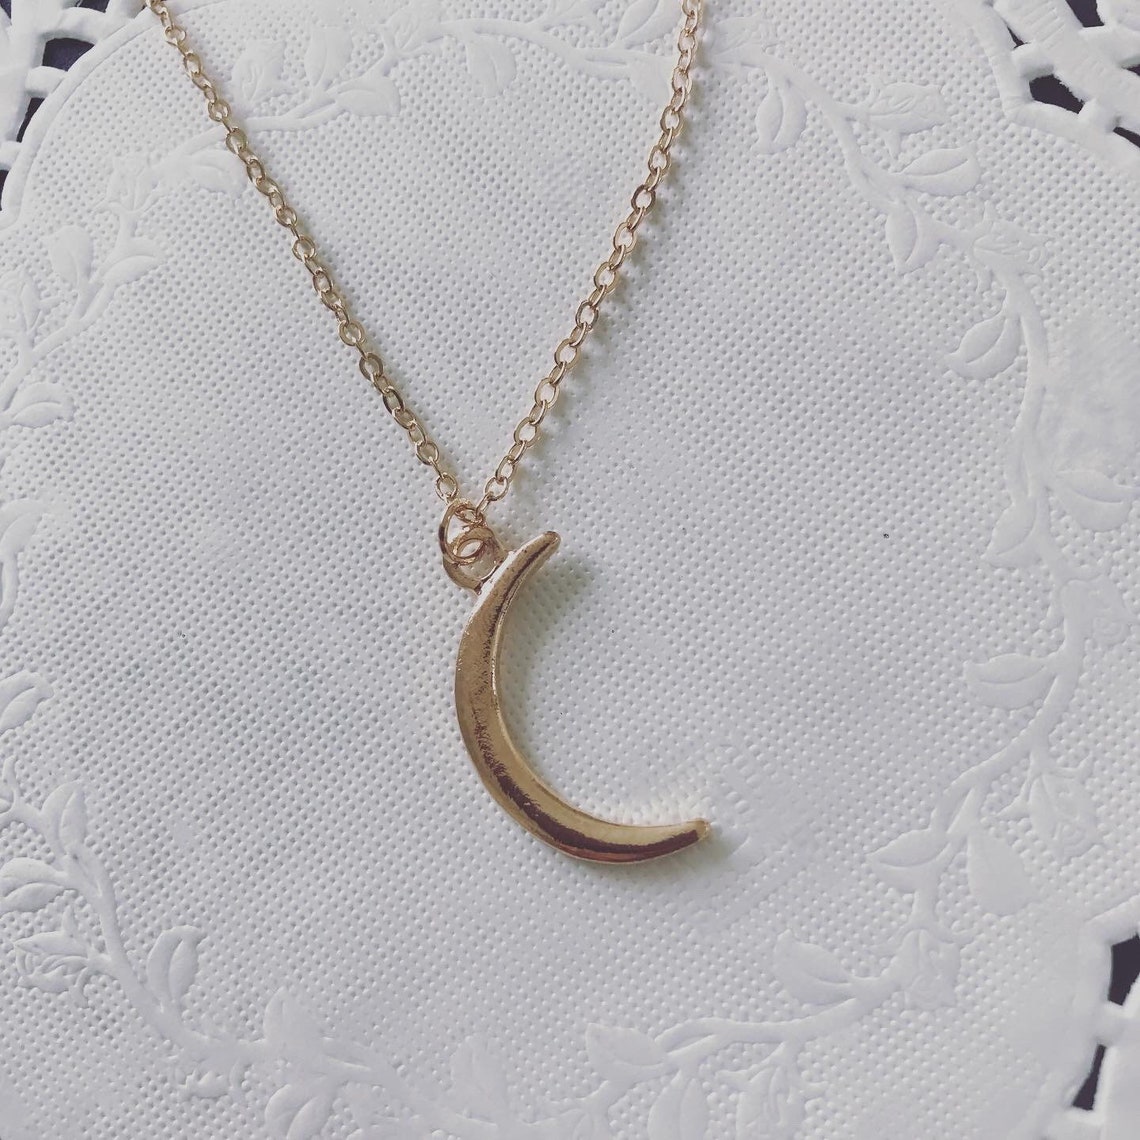 Moonlight necklace | Etsy